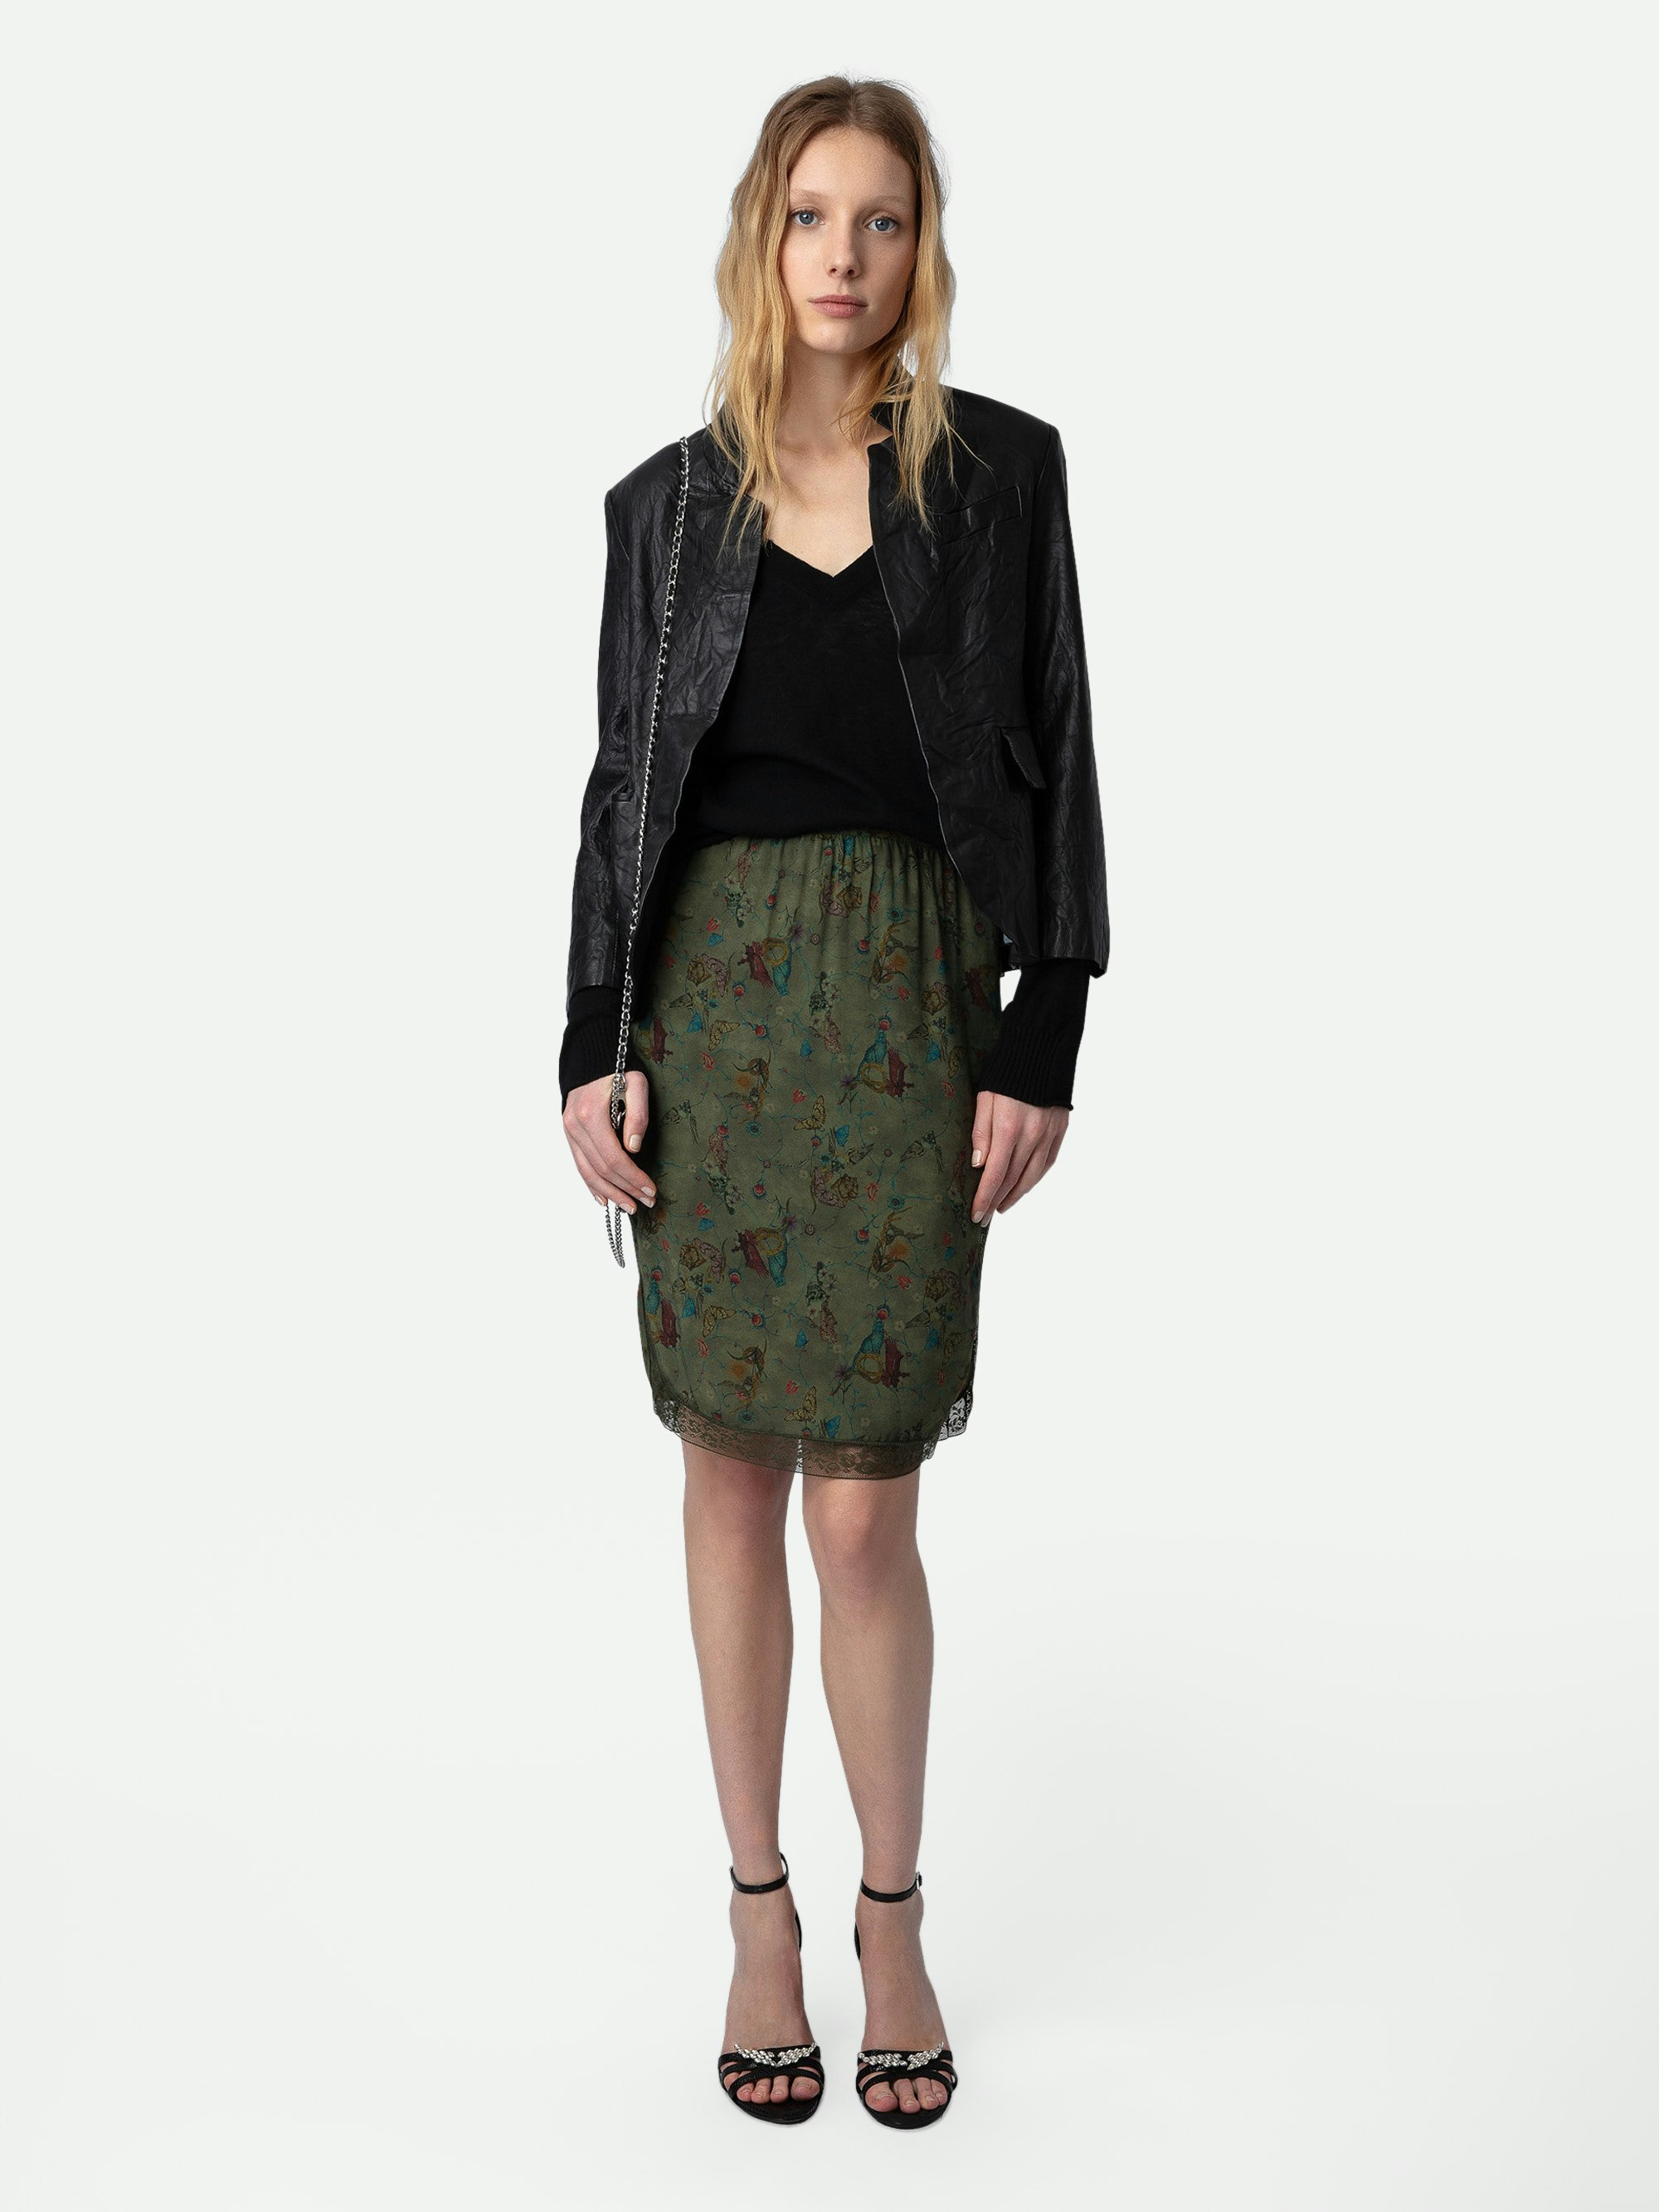 Falda Jozy - Falda de estilo lencero de largo medio en color caqui con estampado, abertura y bordes de encaje.